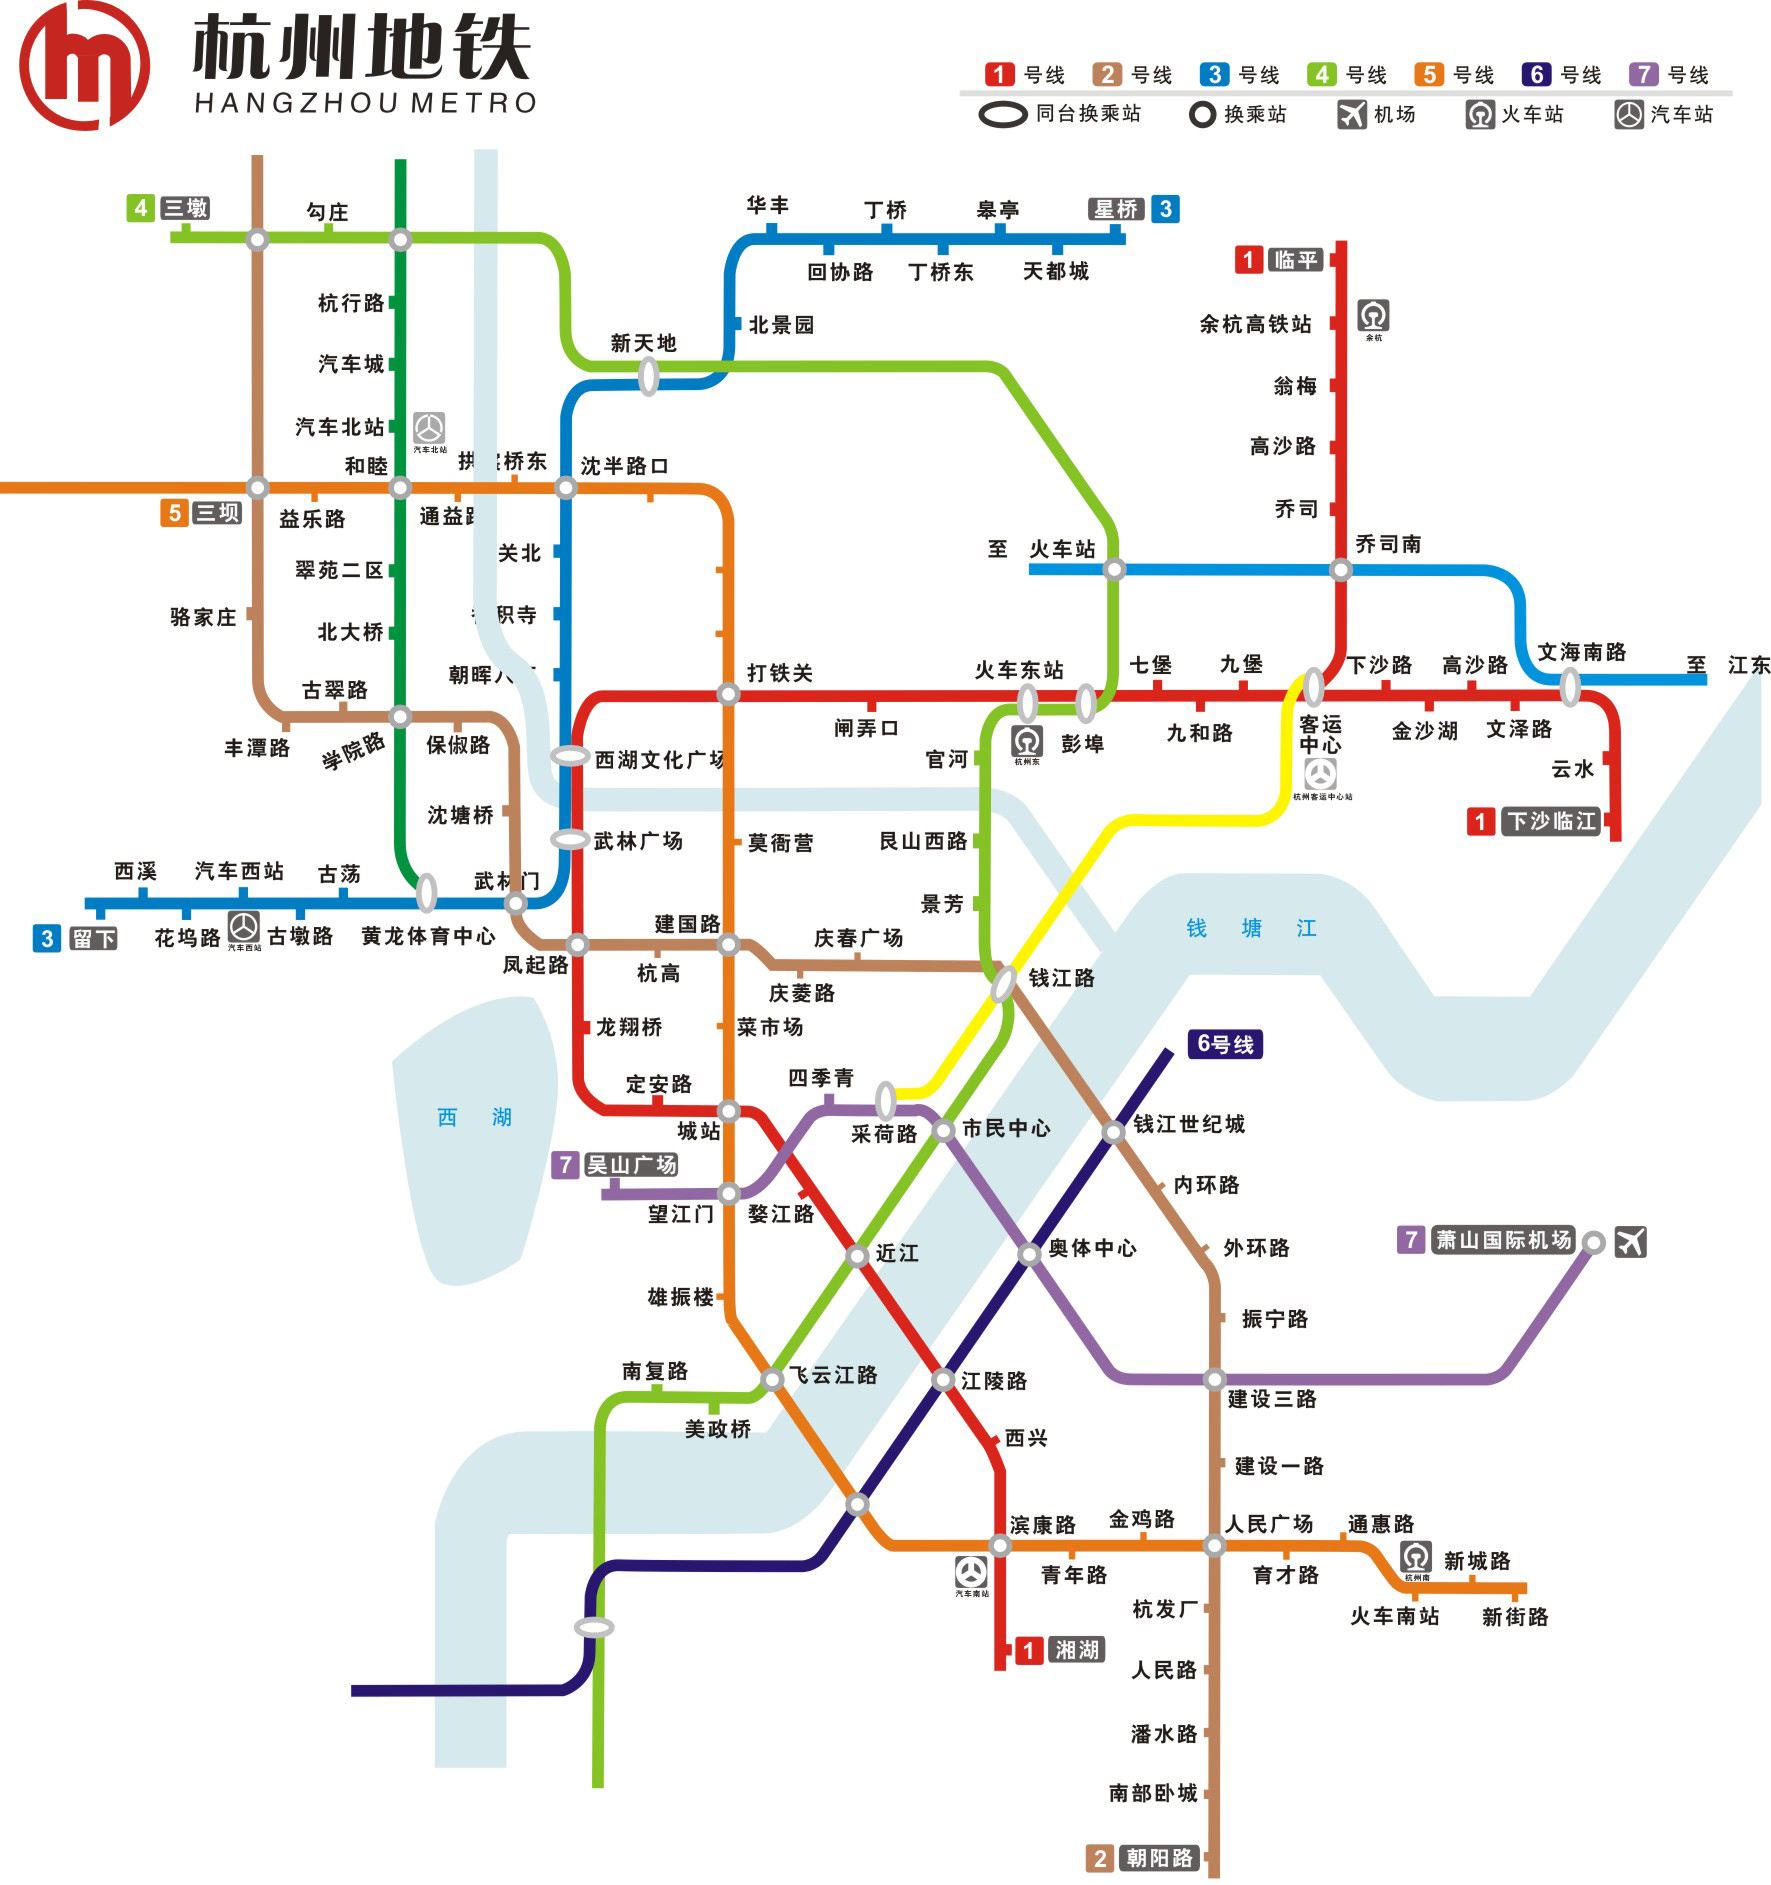 中国在建地铁里程排名前5的城市,成都第一